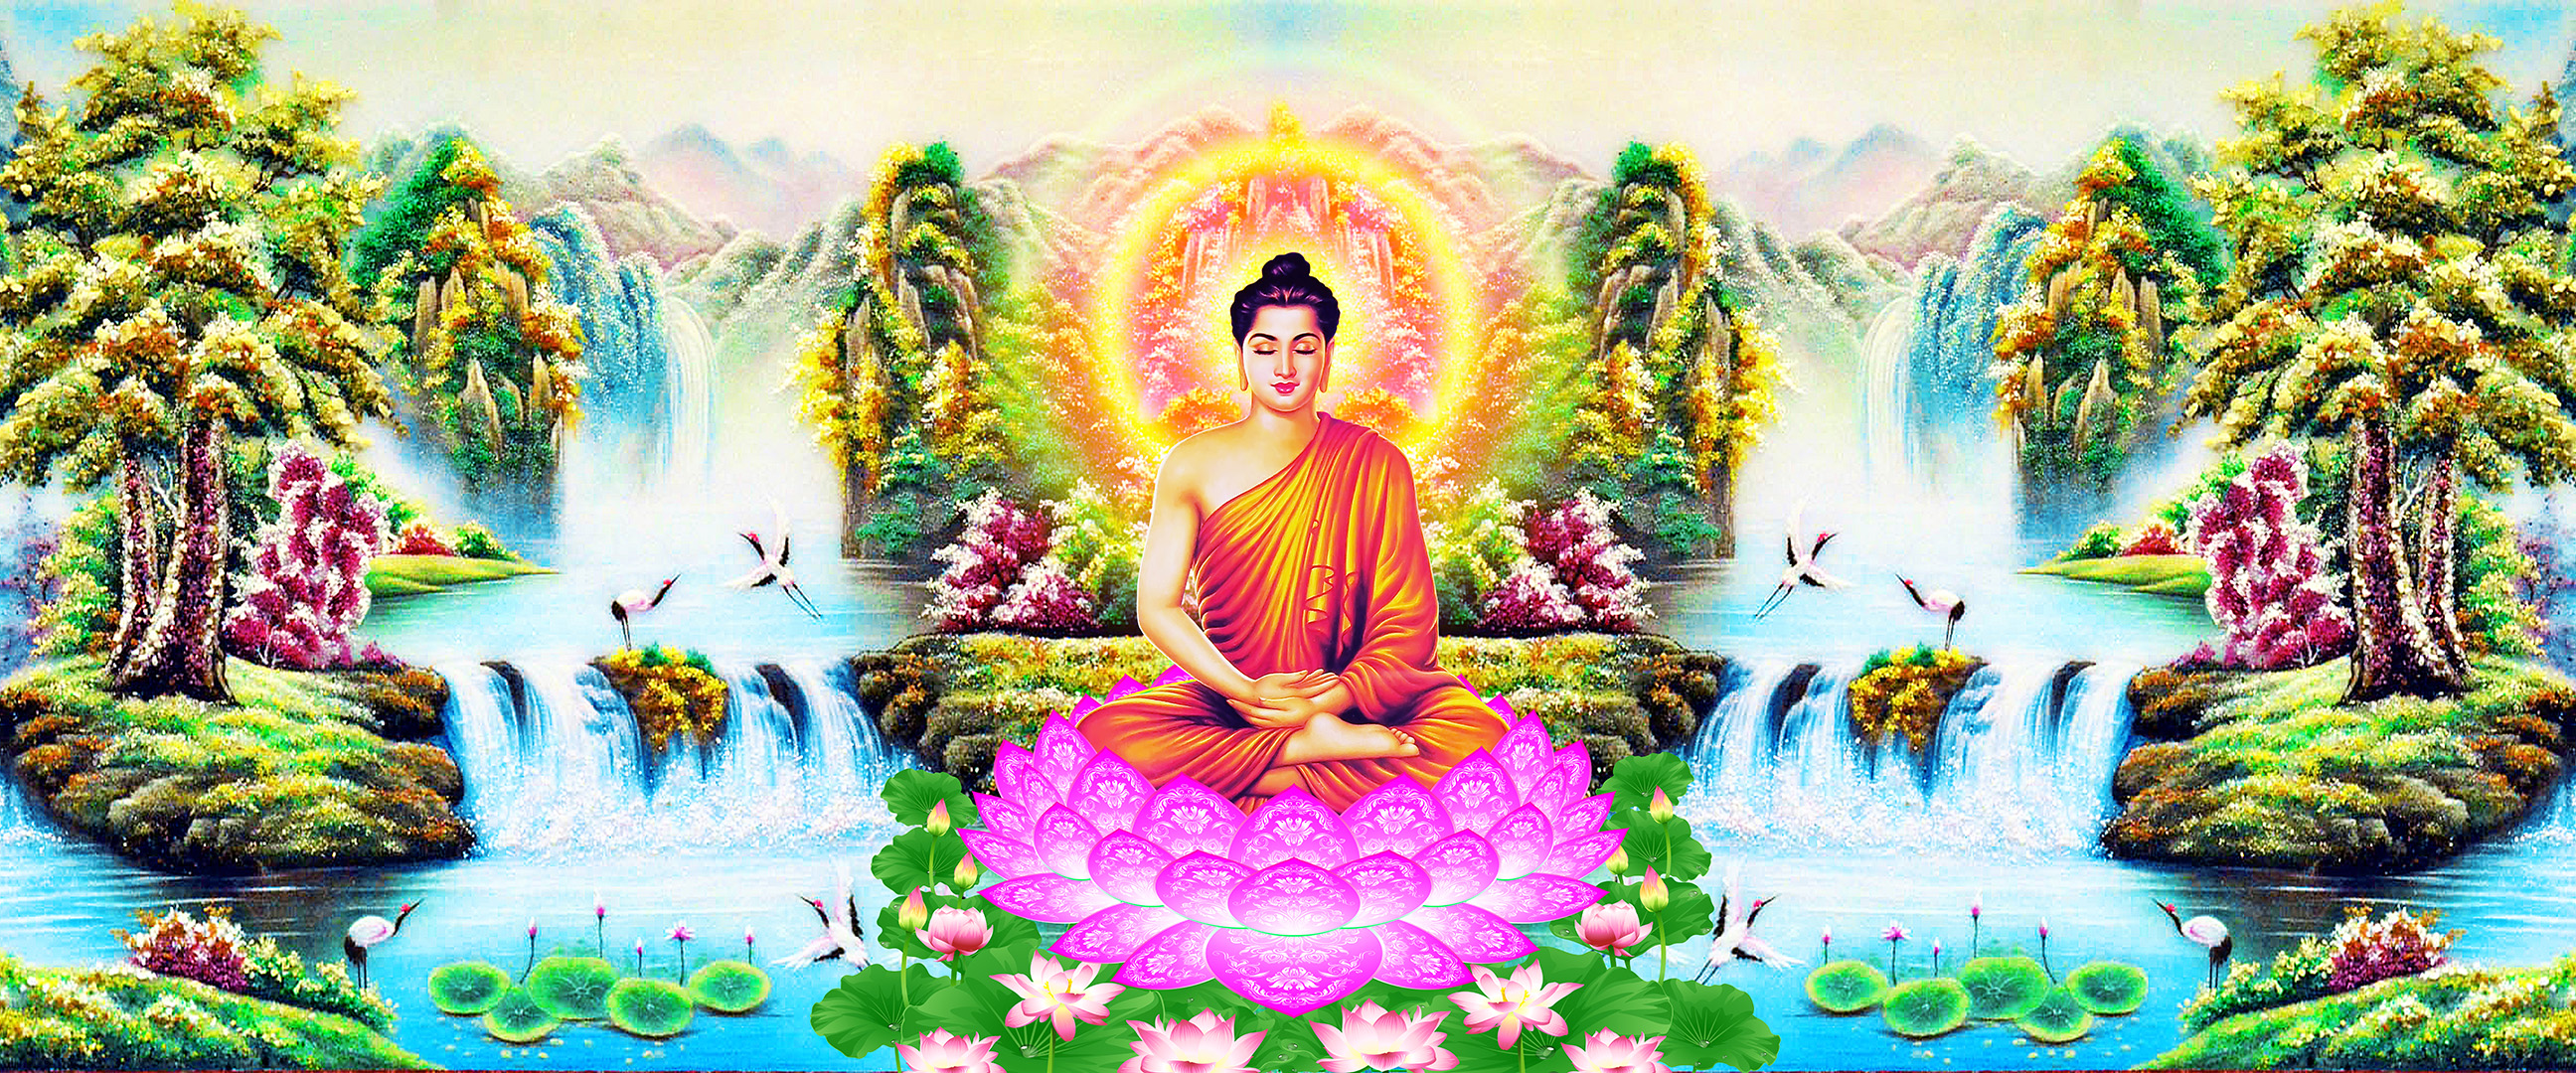 Bức hình của Phật Pháp Khổ Lớn sẽ khiến bạn bị cuốn hút bởi sự trang nghiêm và sức mạnh nhân văn vô tưởng của Đức Phật.